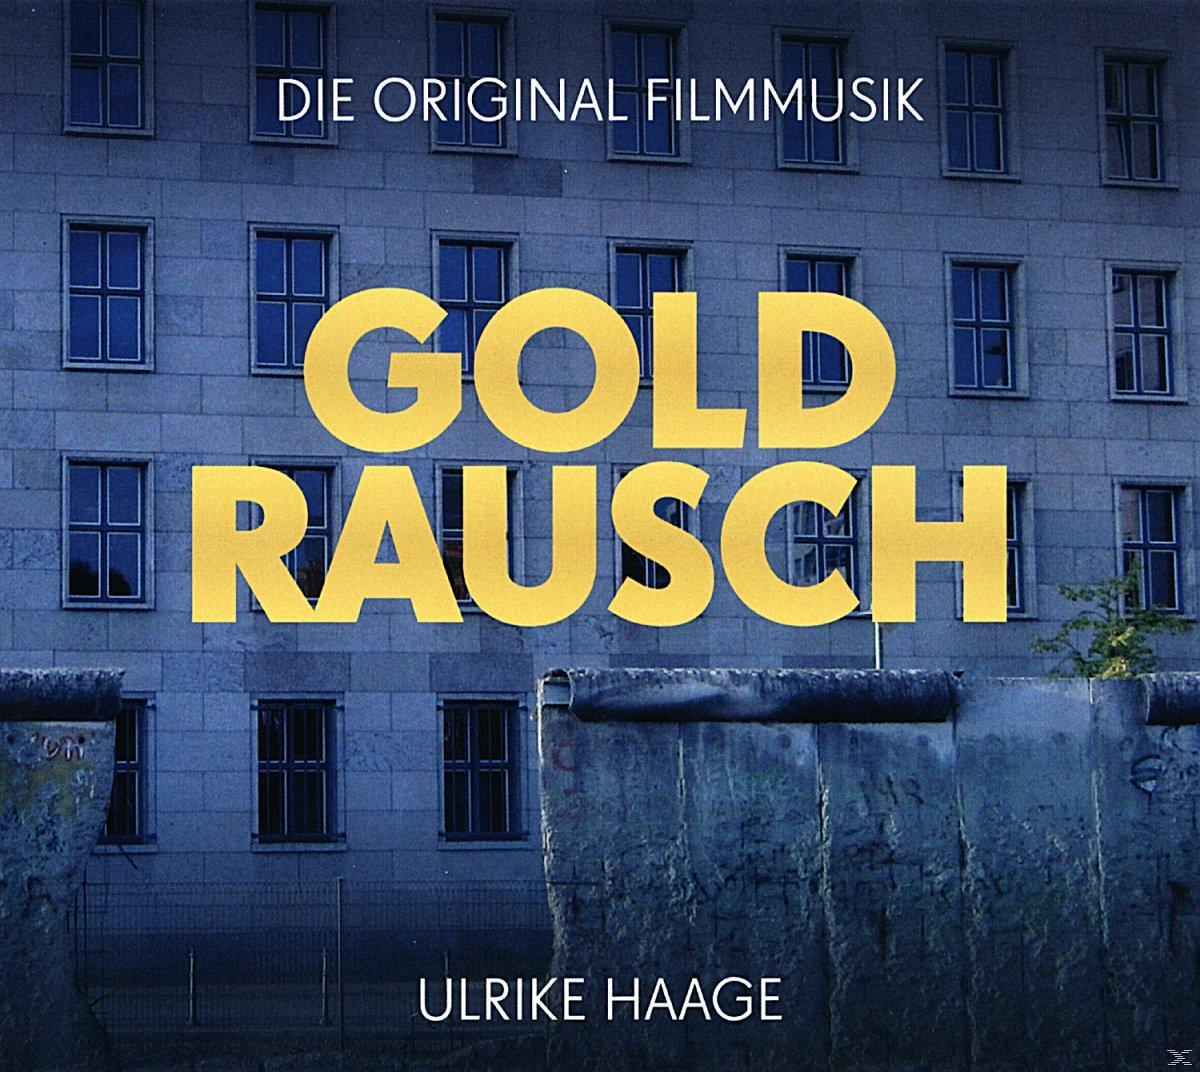 Ulrike Goldrausch (CD) - - Haage